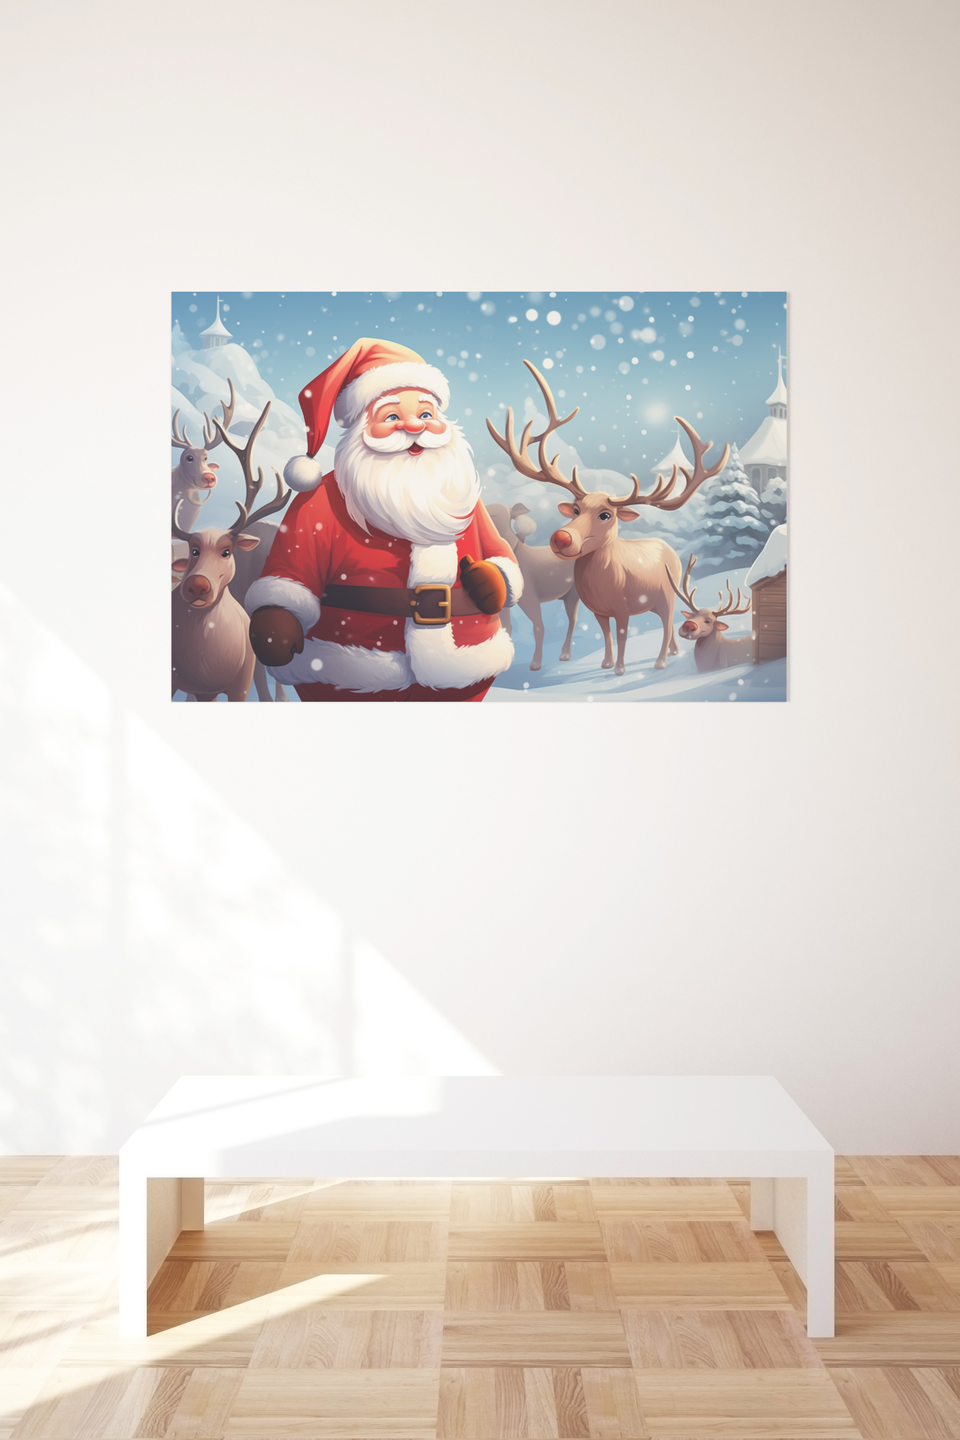 Weihnachtsmann mit Rudolf